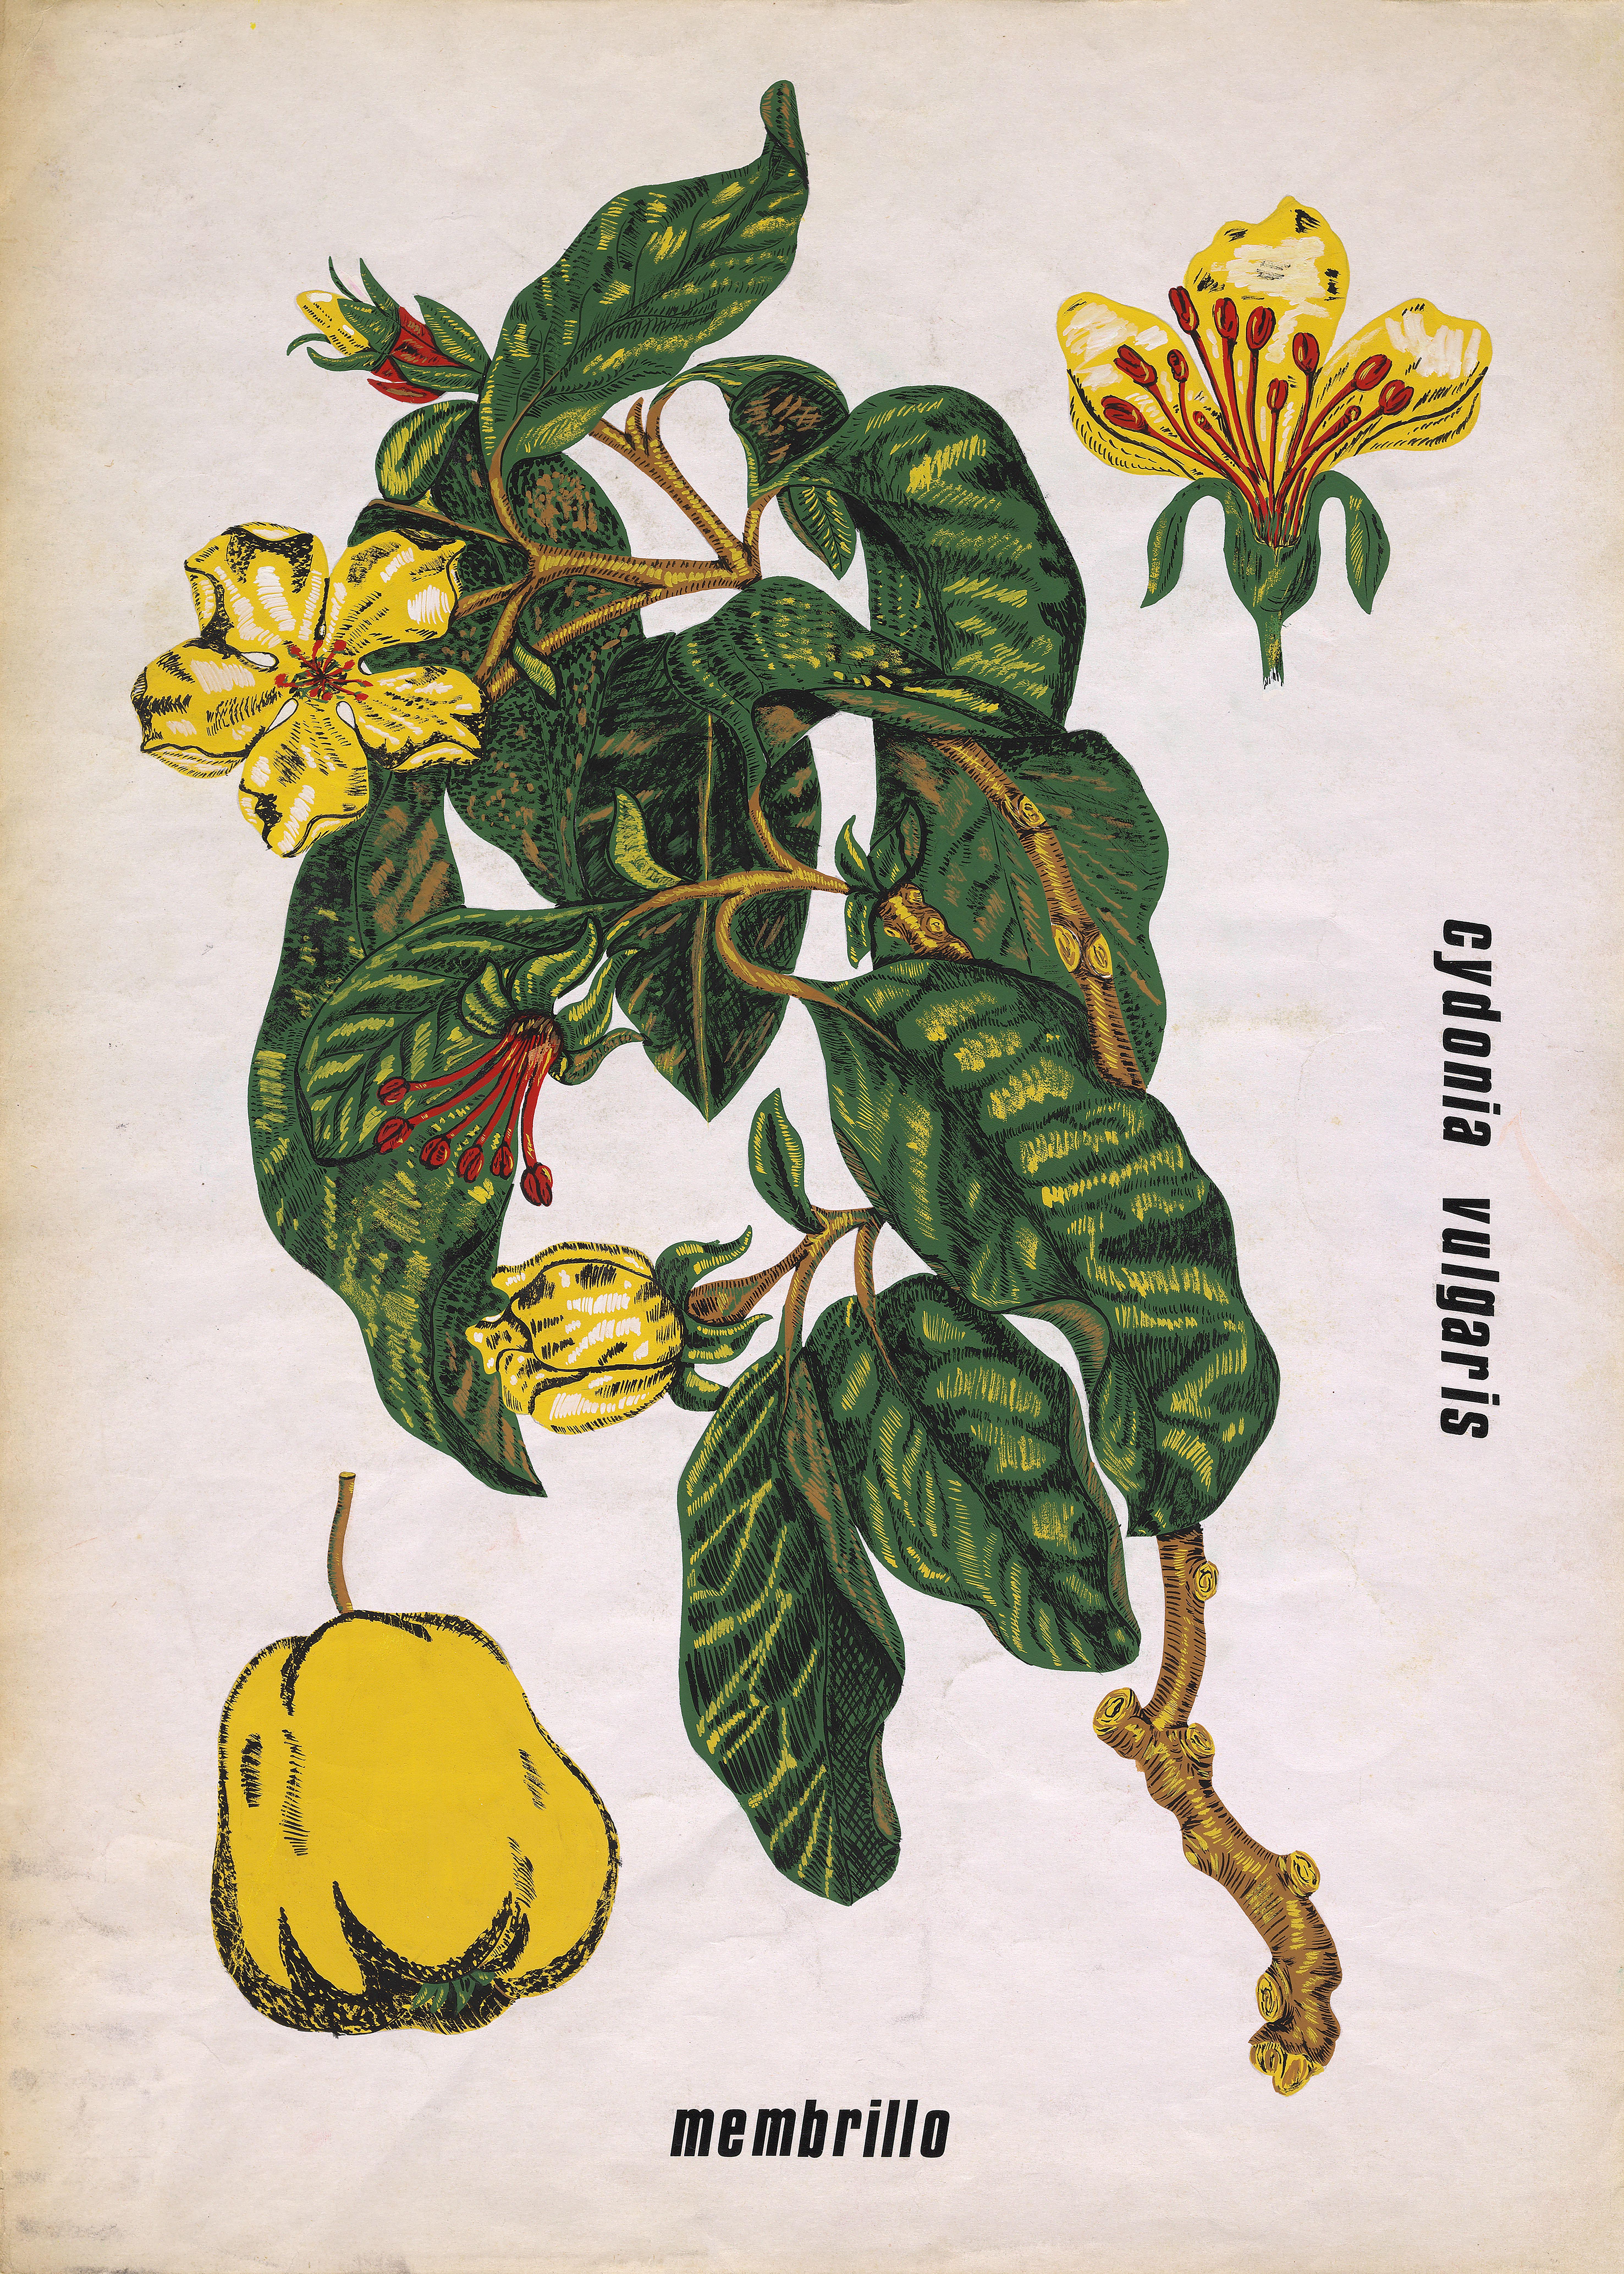 Conception textile originale des années 70 peinte à la main à la gouache de style botanique sur papier blanc